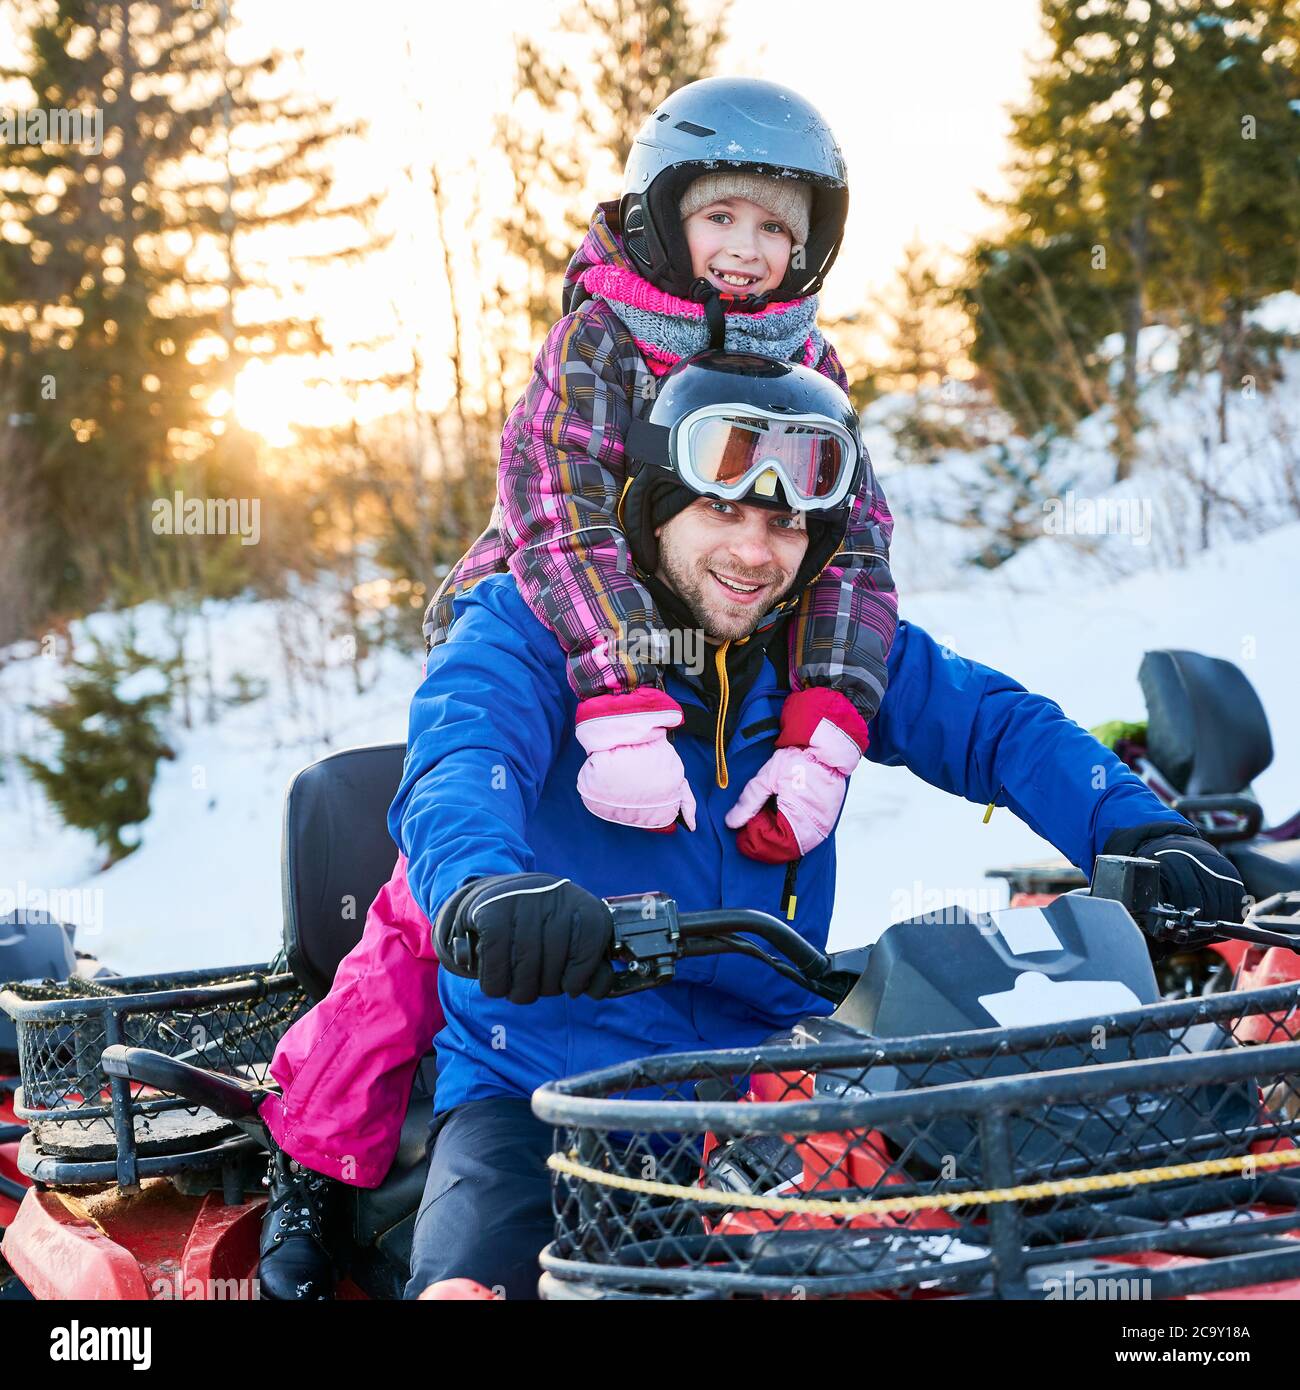 Ritratto di famiglia sorridente, padre e figlia, indossando vivaci costumi da sci, caschi e occhiali di protezione, seduto su una moto di squadra, sorridendo a macchina fotografica in montagne innevate al tramonto. Concetto di svago attivo. Foto Stock